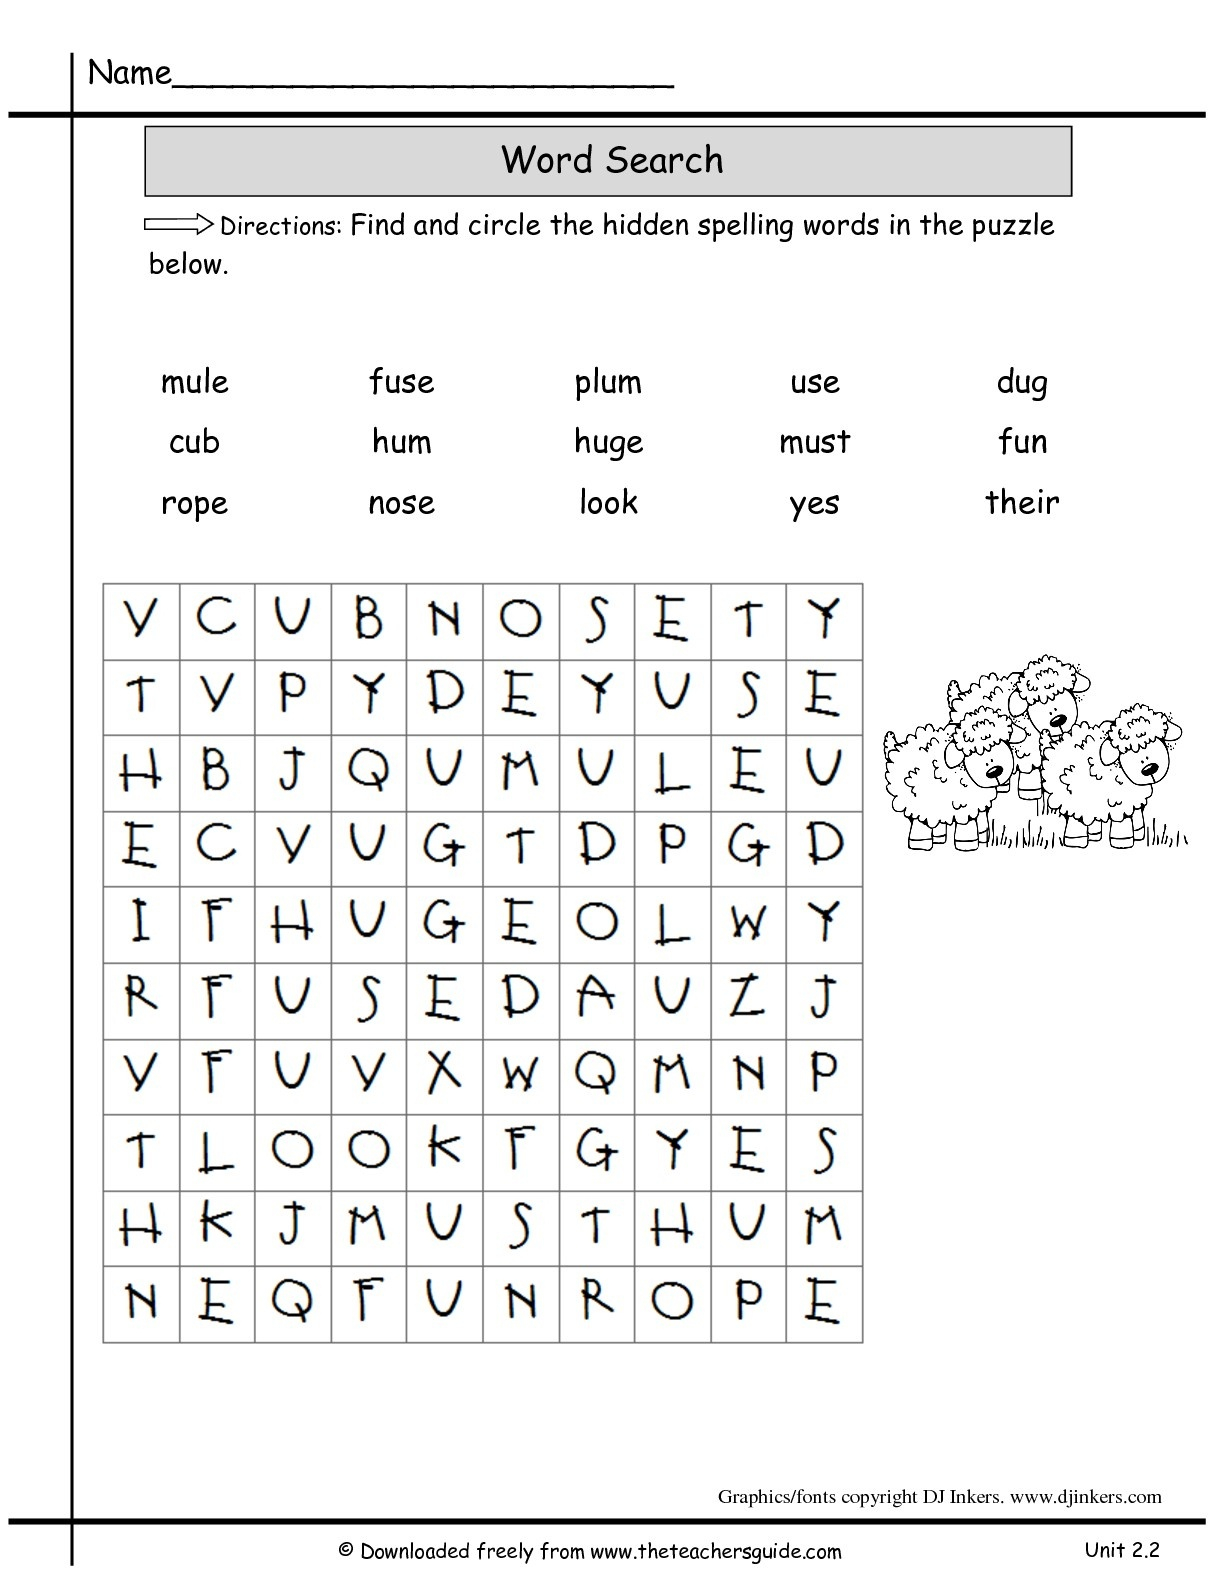 free-word-search-worksheets-for-1st-grade-golden-kids-esl